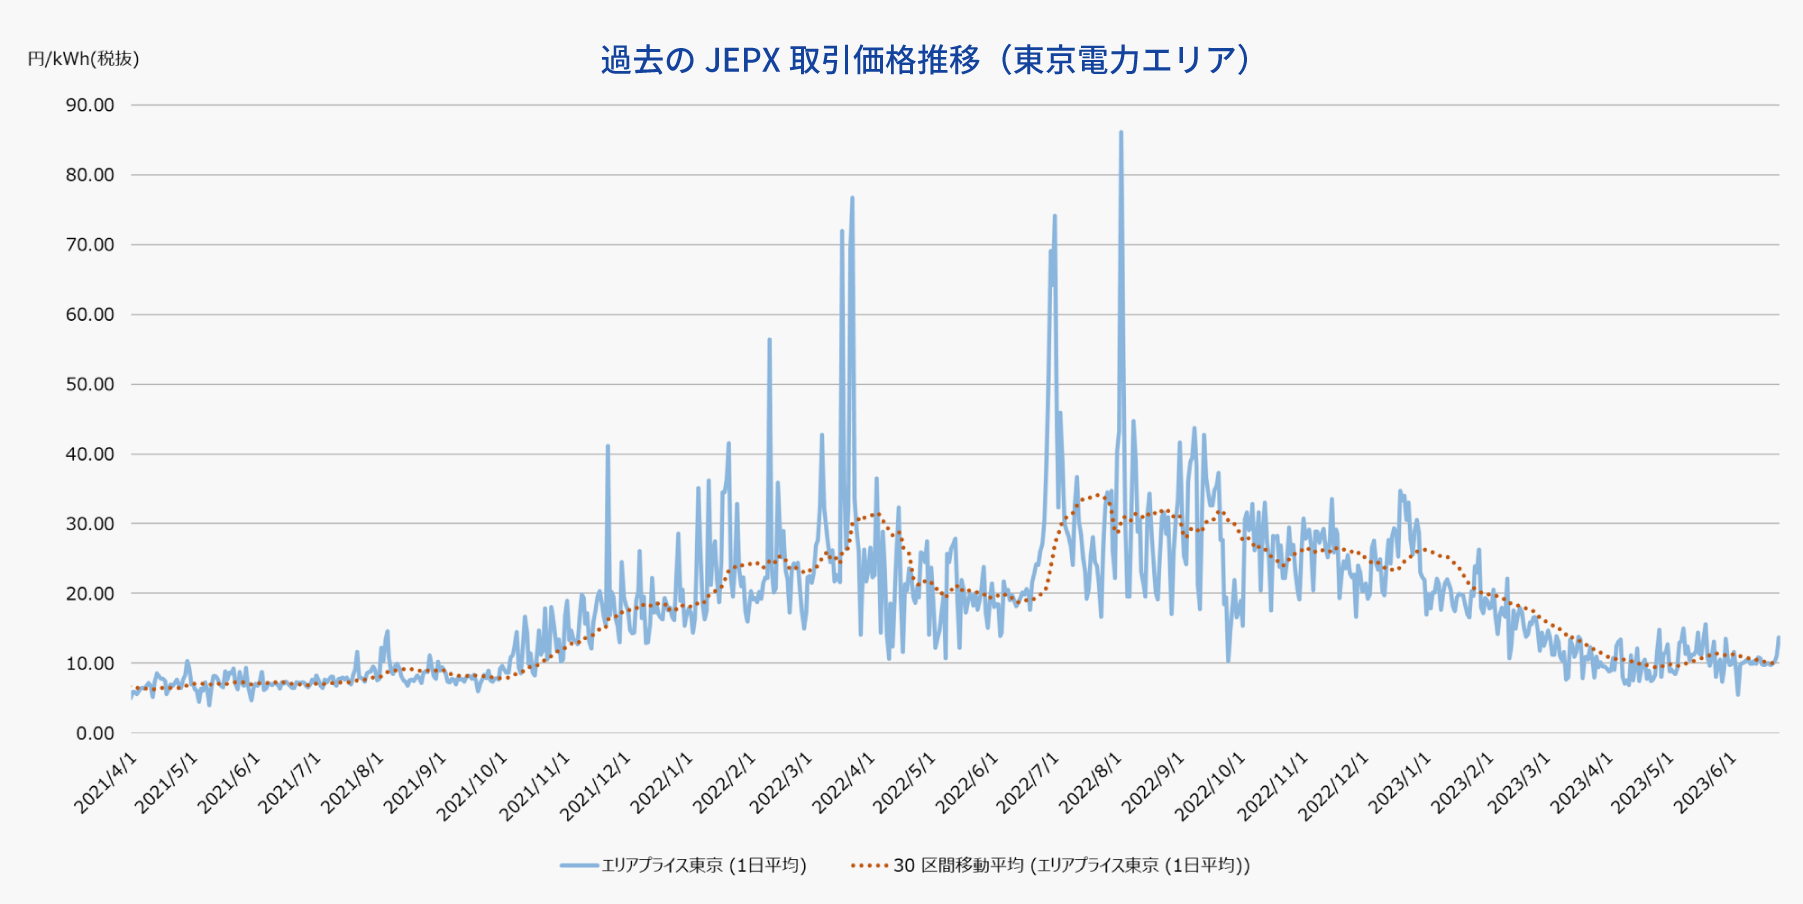 過去のJEPX取引価格推移（東京電力エリア）の説明